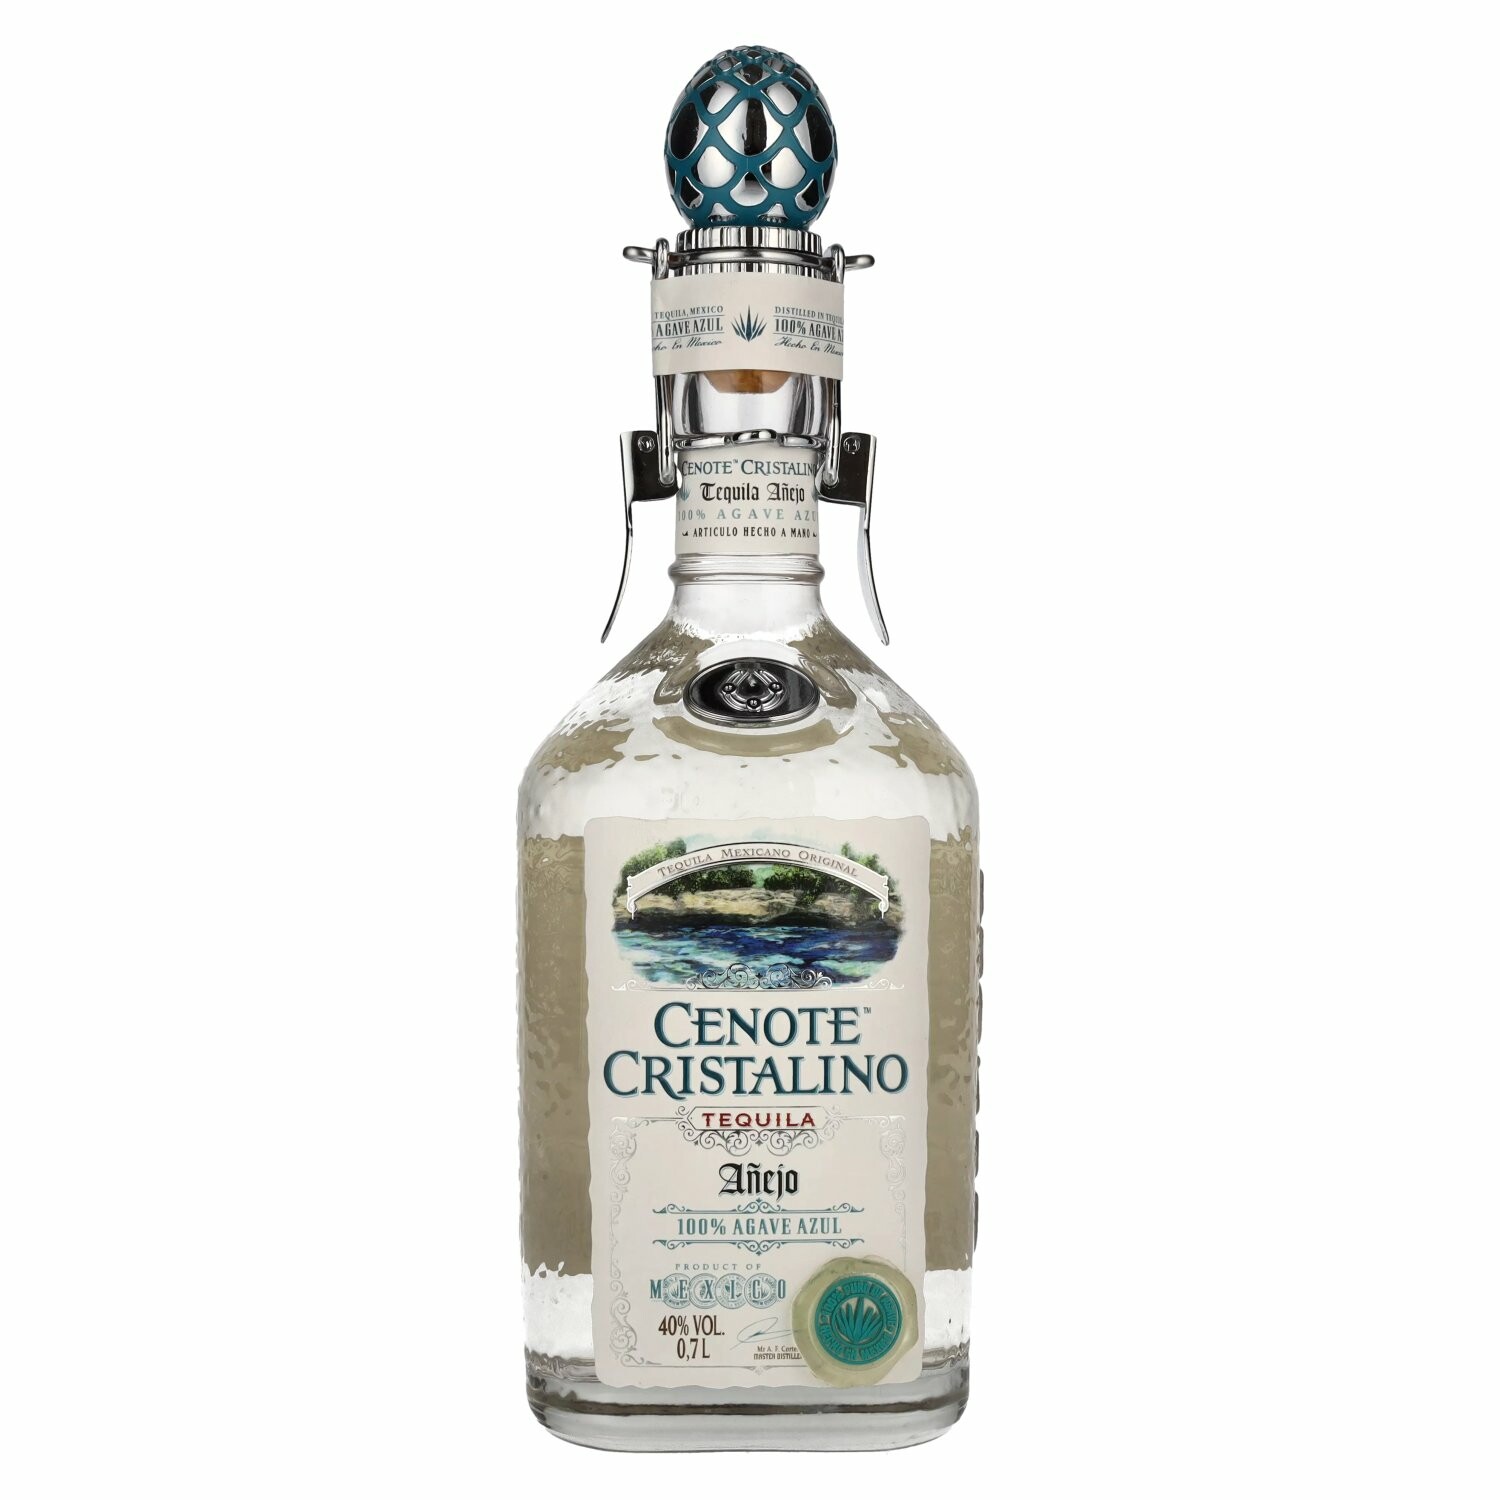 Cenote CRISTALINO Tequila Añejo 100% Agave Azul 40% Vol. 0,7l